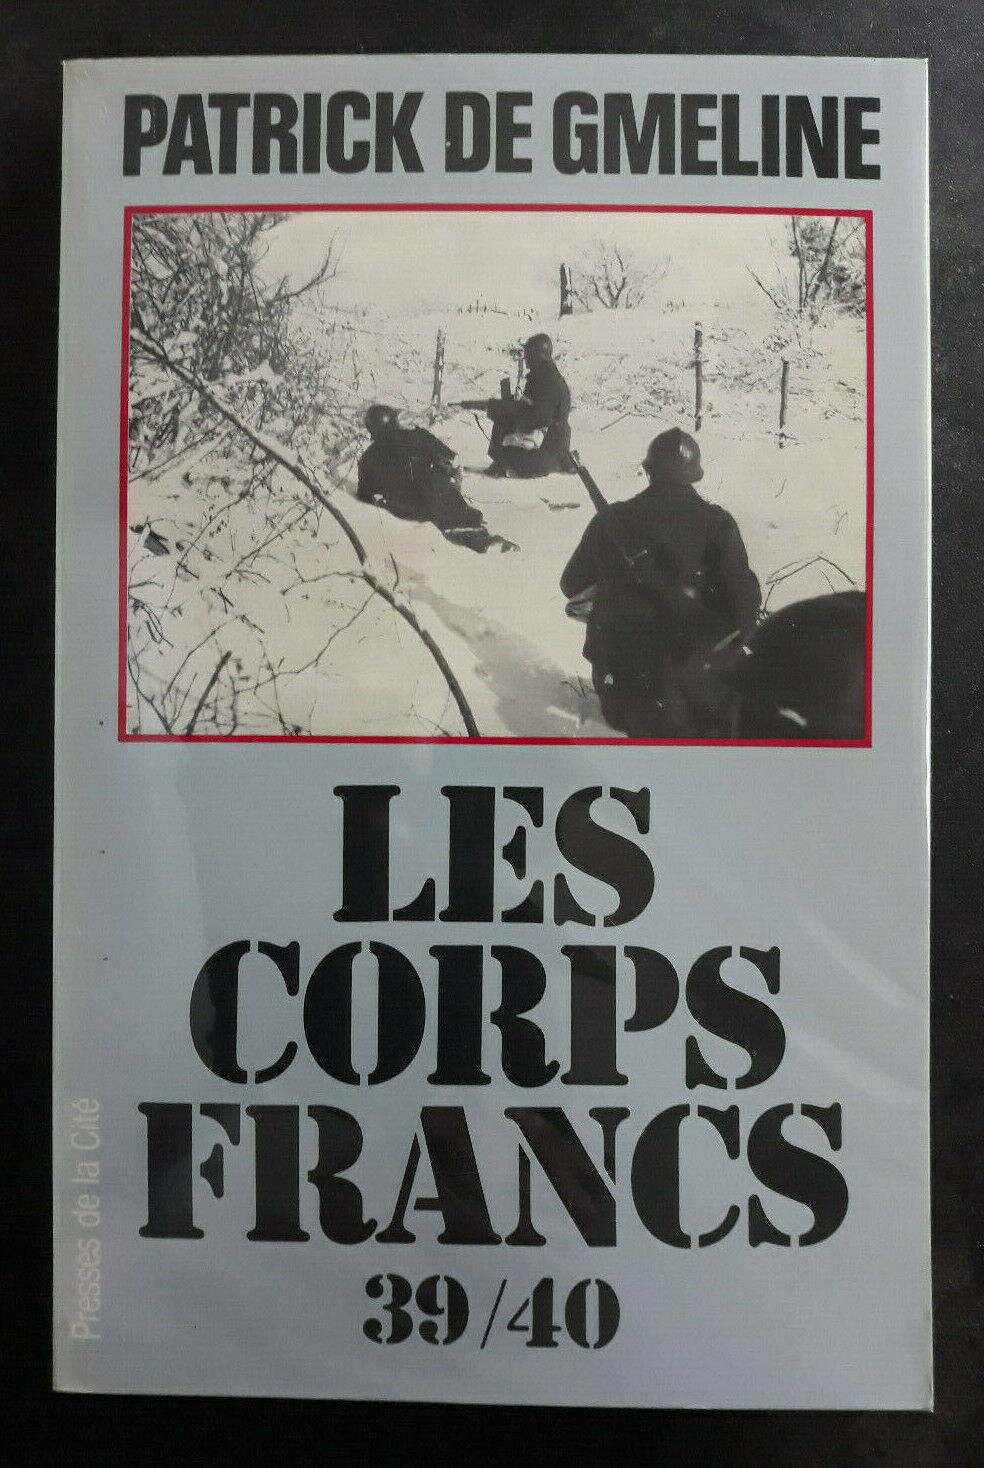 LES CORPS FRANCS 39/40 Patrick de Gmeline 1983 Ed. PRESSES DE LA CITE